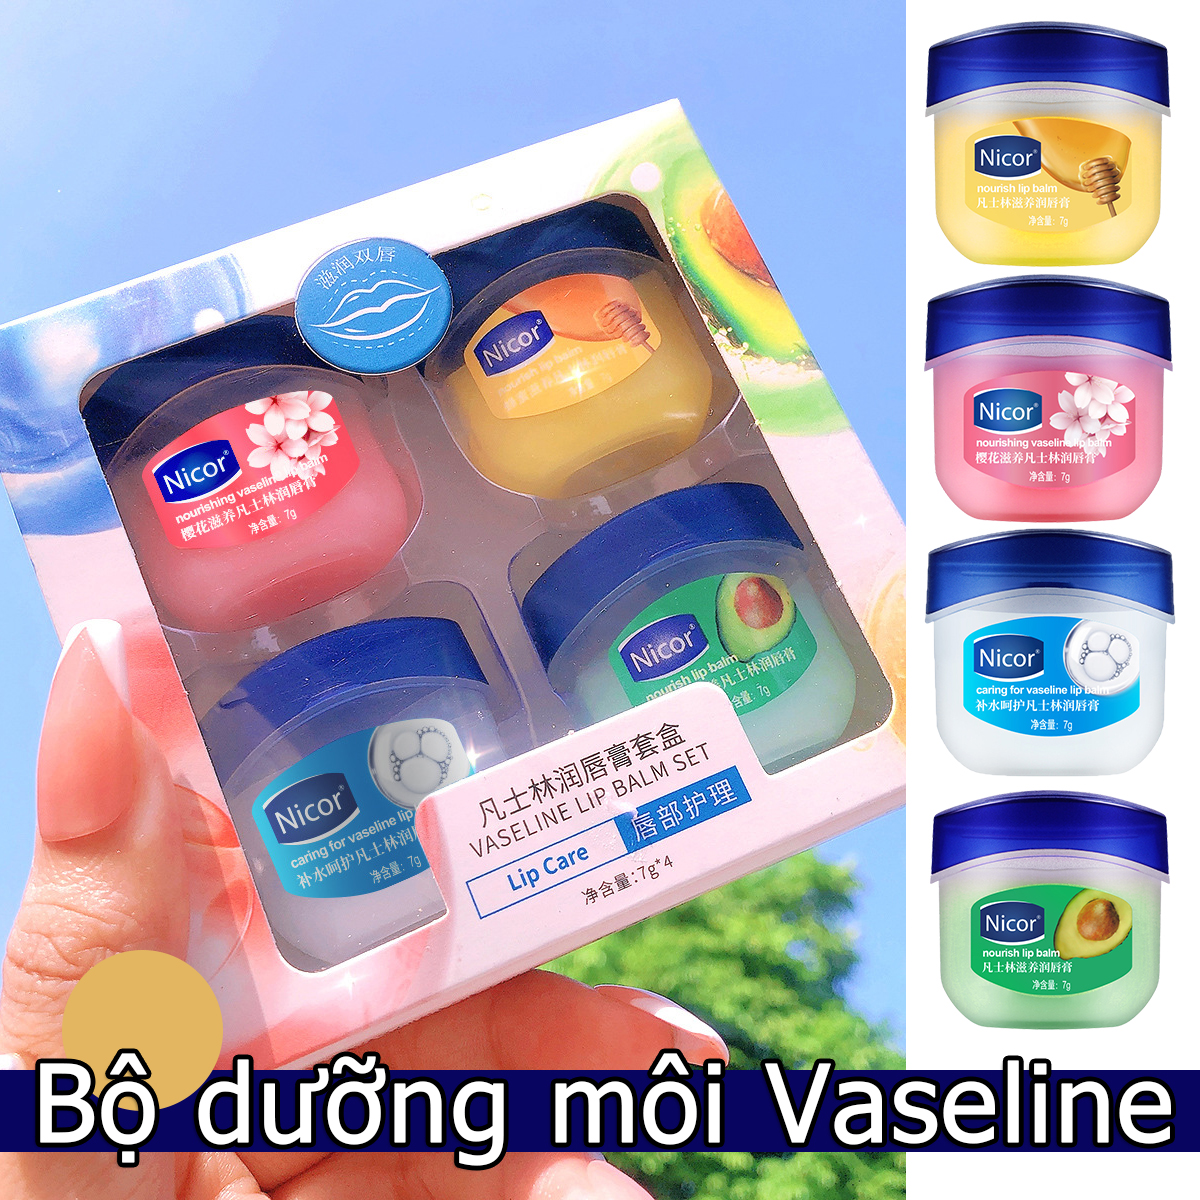 [miễn phí vận chuyển] Bộ 1/4 son dưỡng môi dưỡng ẩm chăm sóc môi Vaseline  - INTL